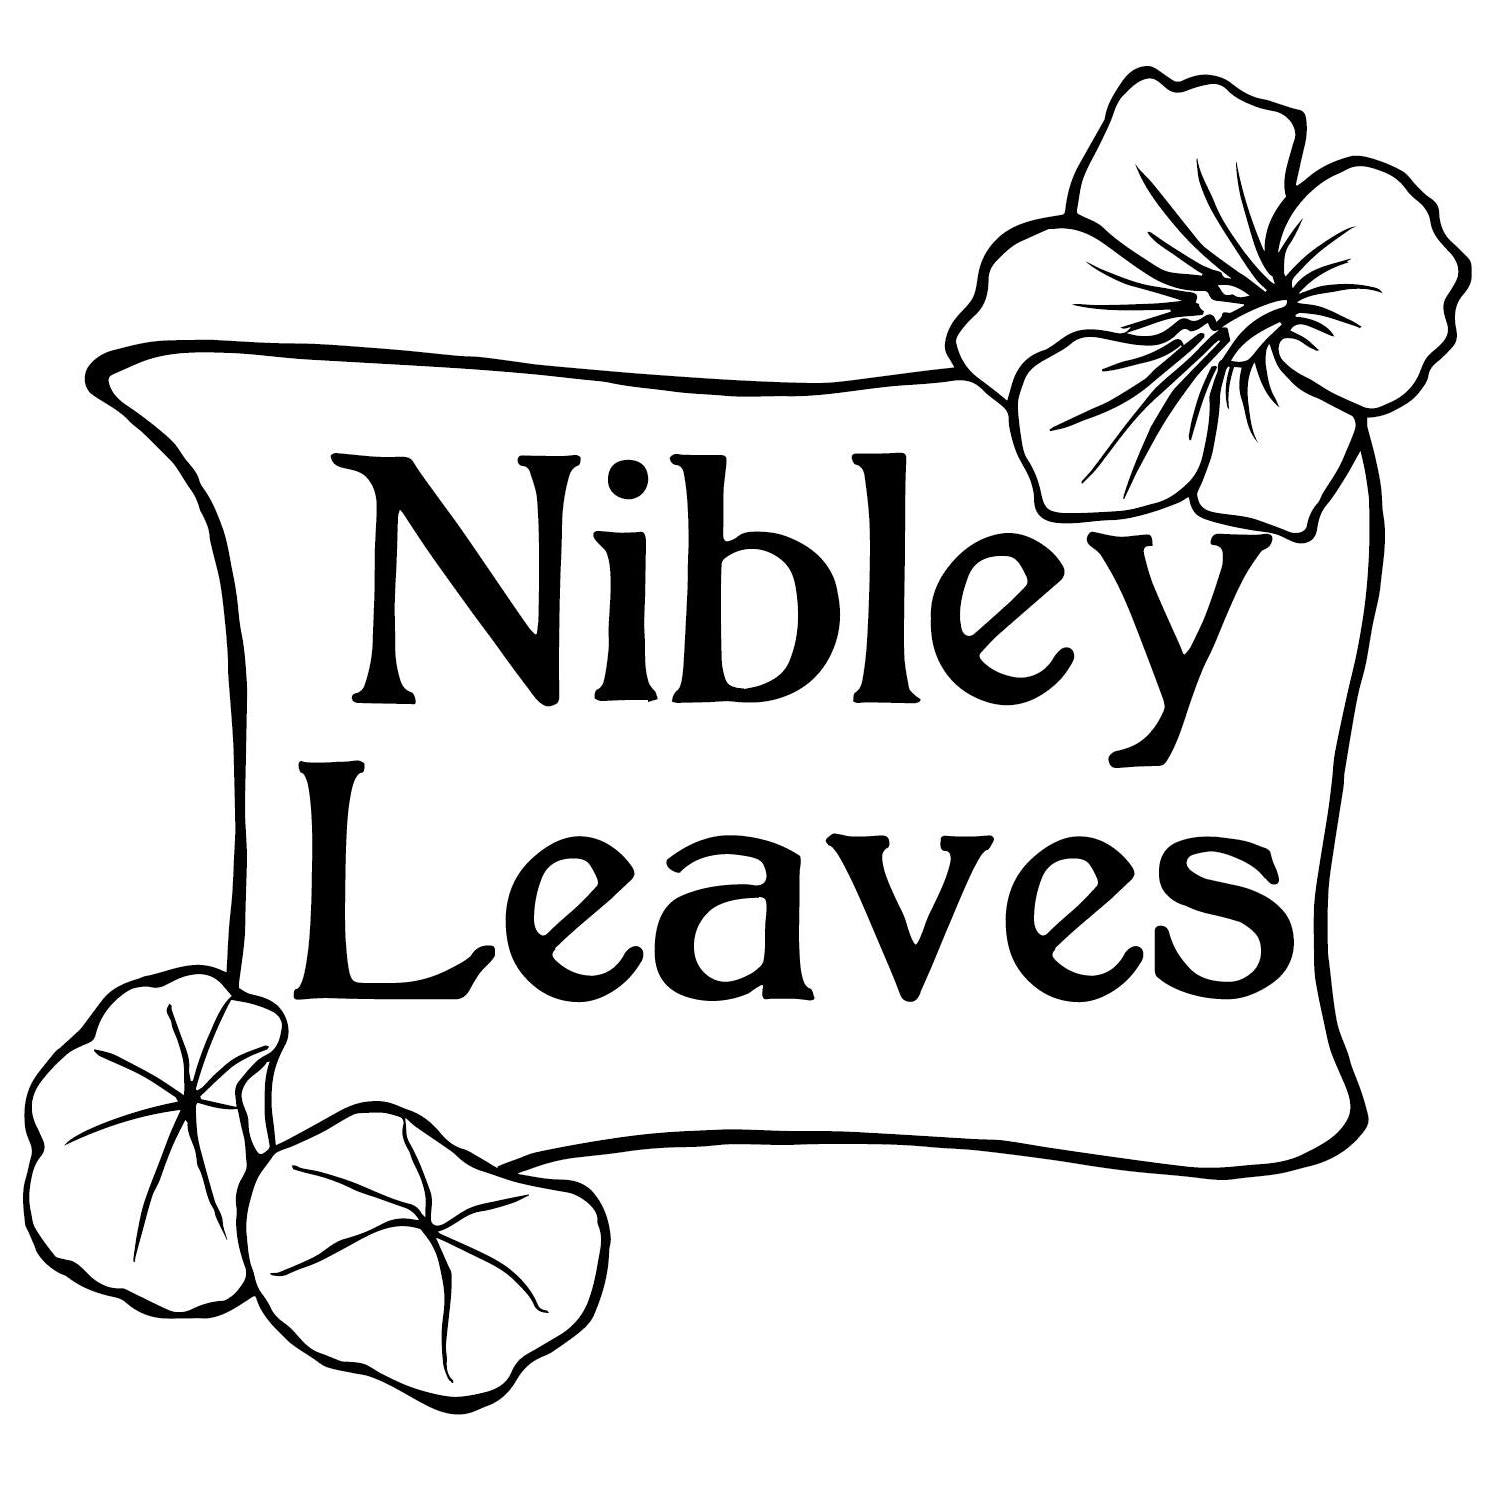 nibley__leaves